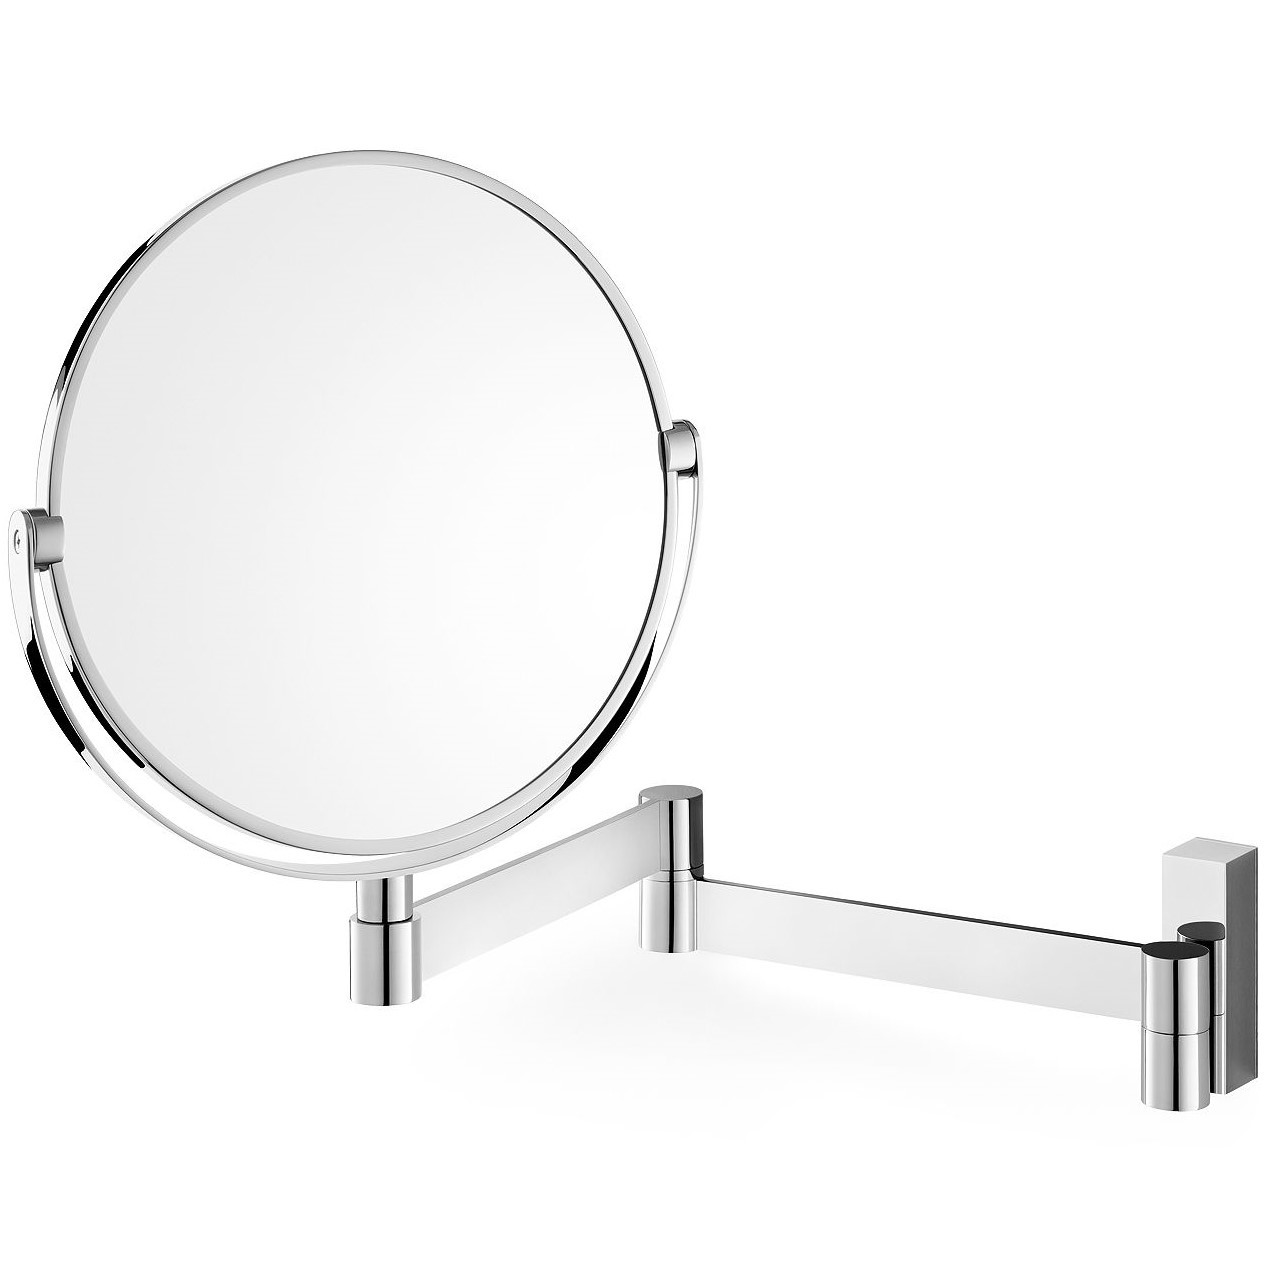 Kosmetické zrcadlo LINEA 18 cm, lesk, nerezová ocel, Zack